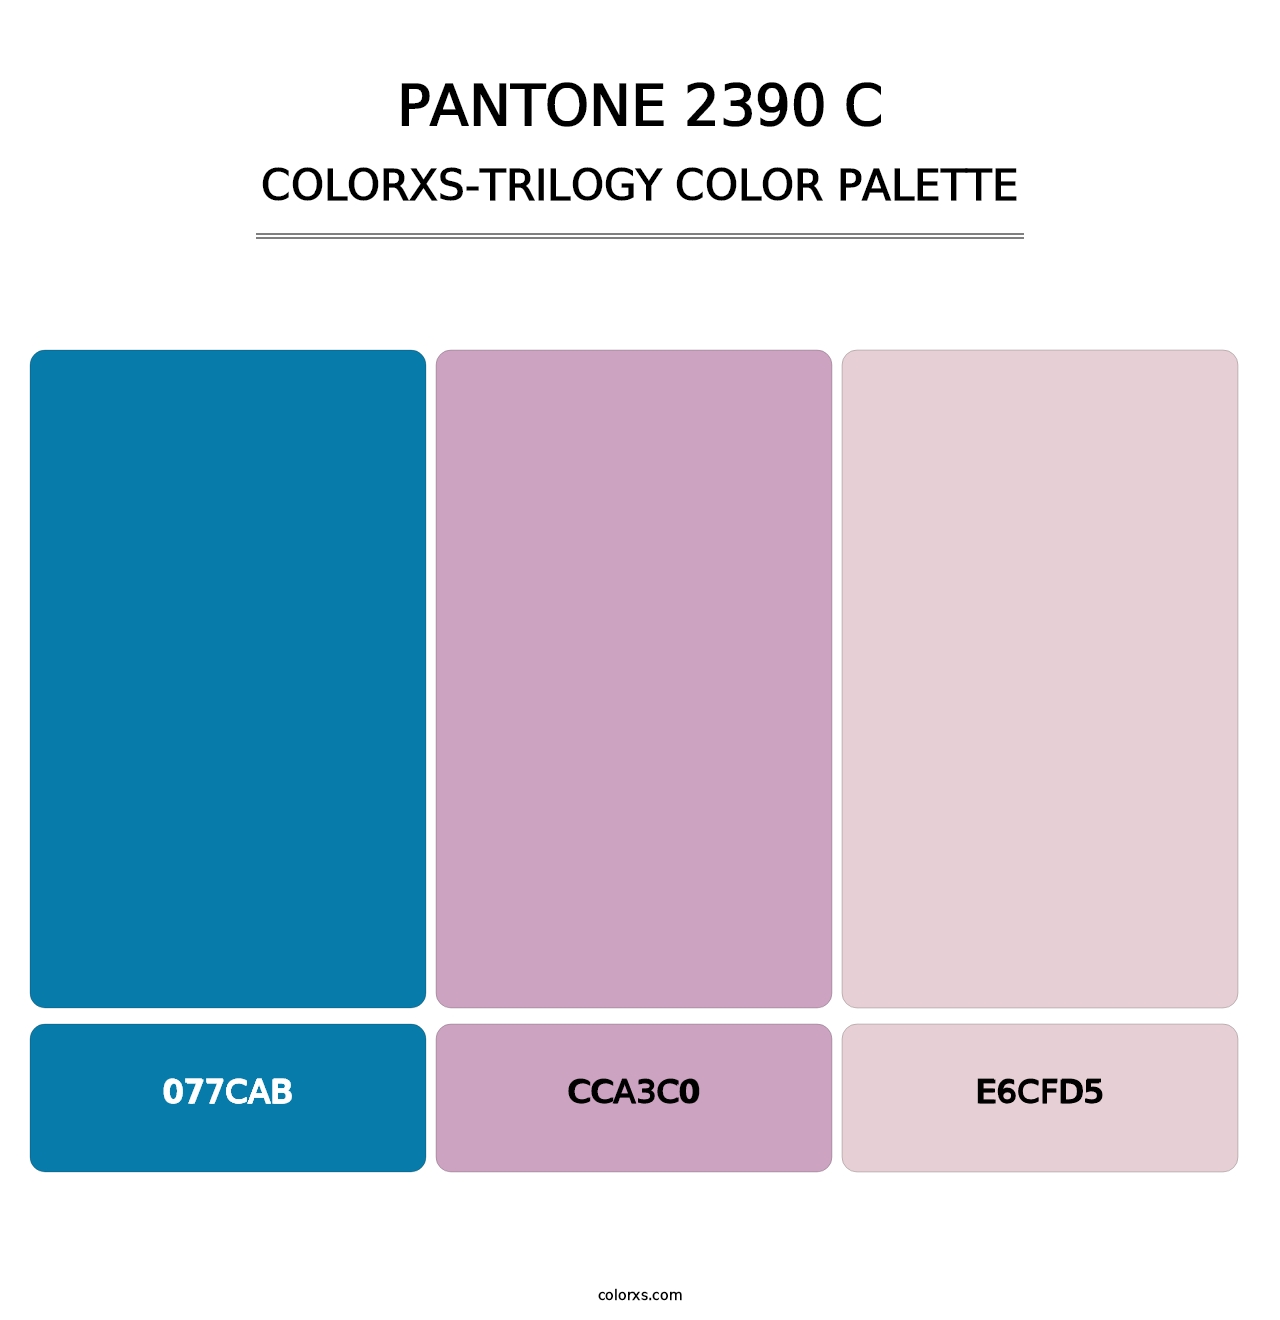 PANTONE 2390 C - Colorxs Trilogy Palette